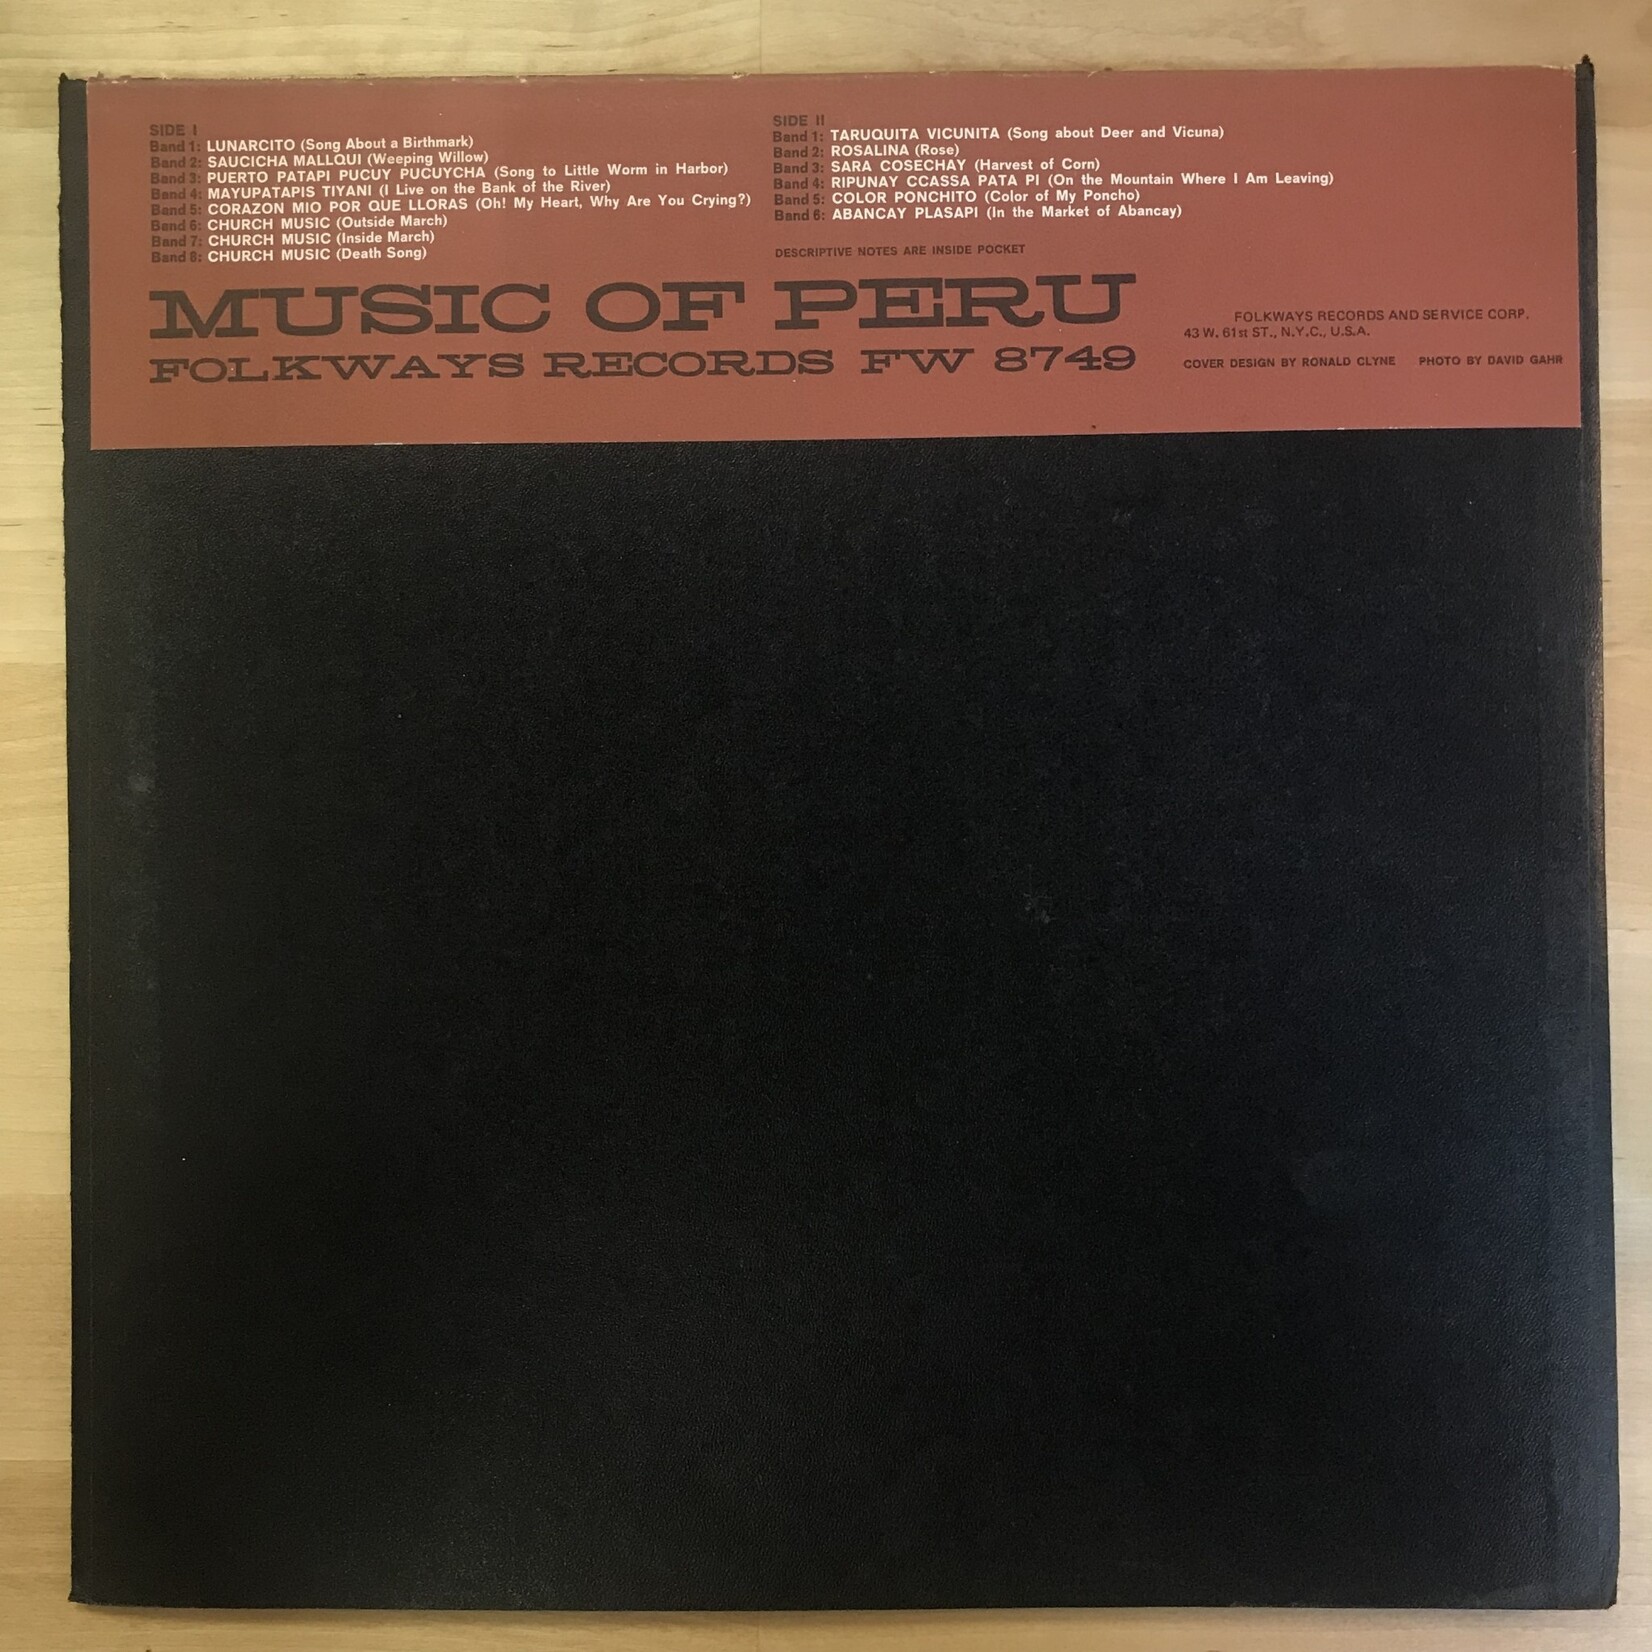 Pinata Party - Music Of Peru - FW 8749 - Vinyl LP (USED)